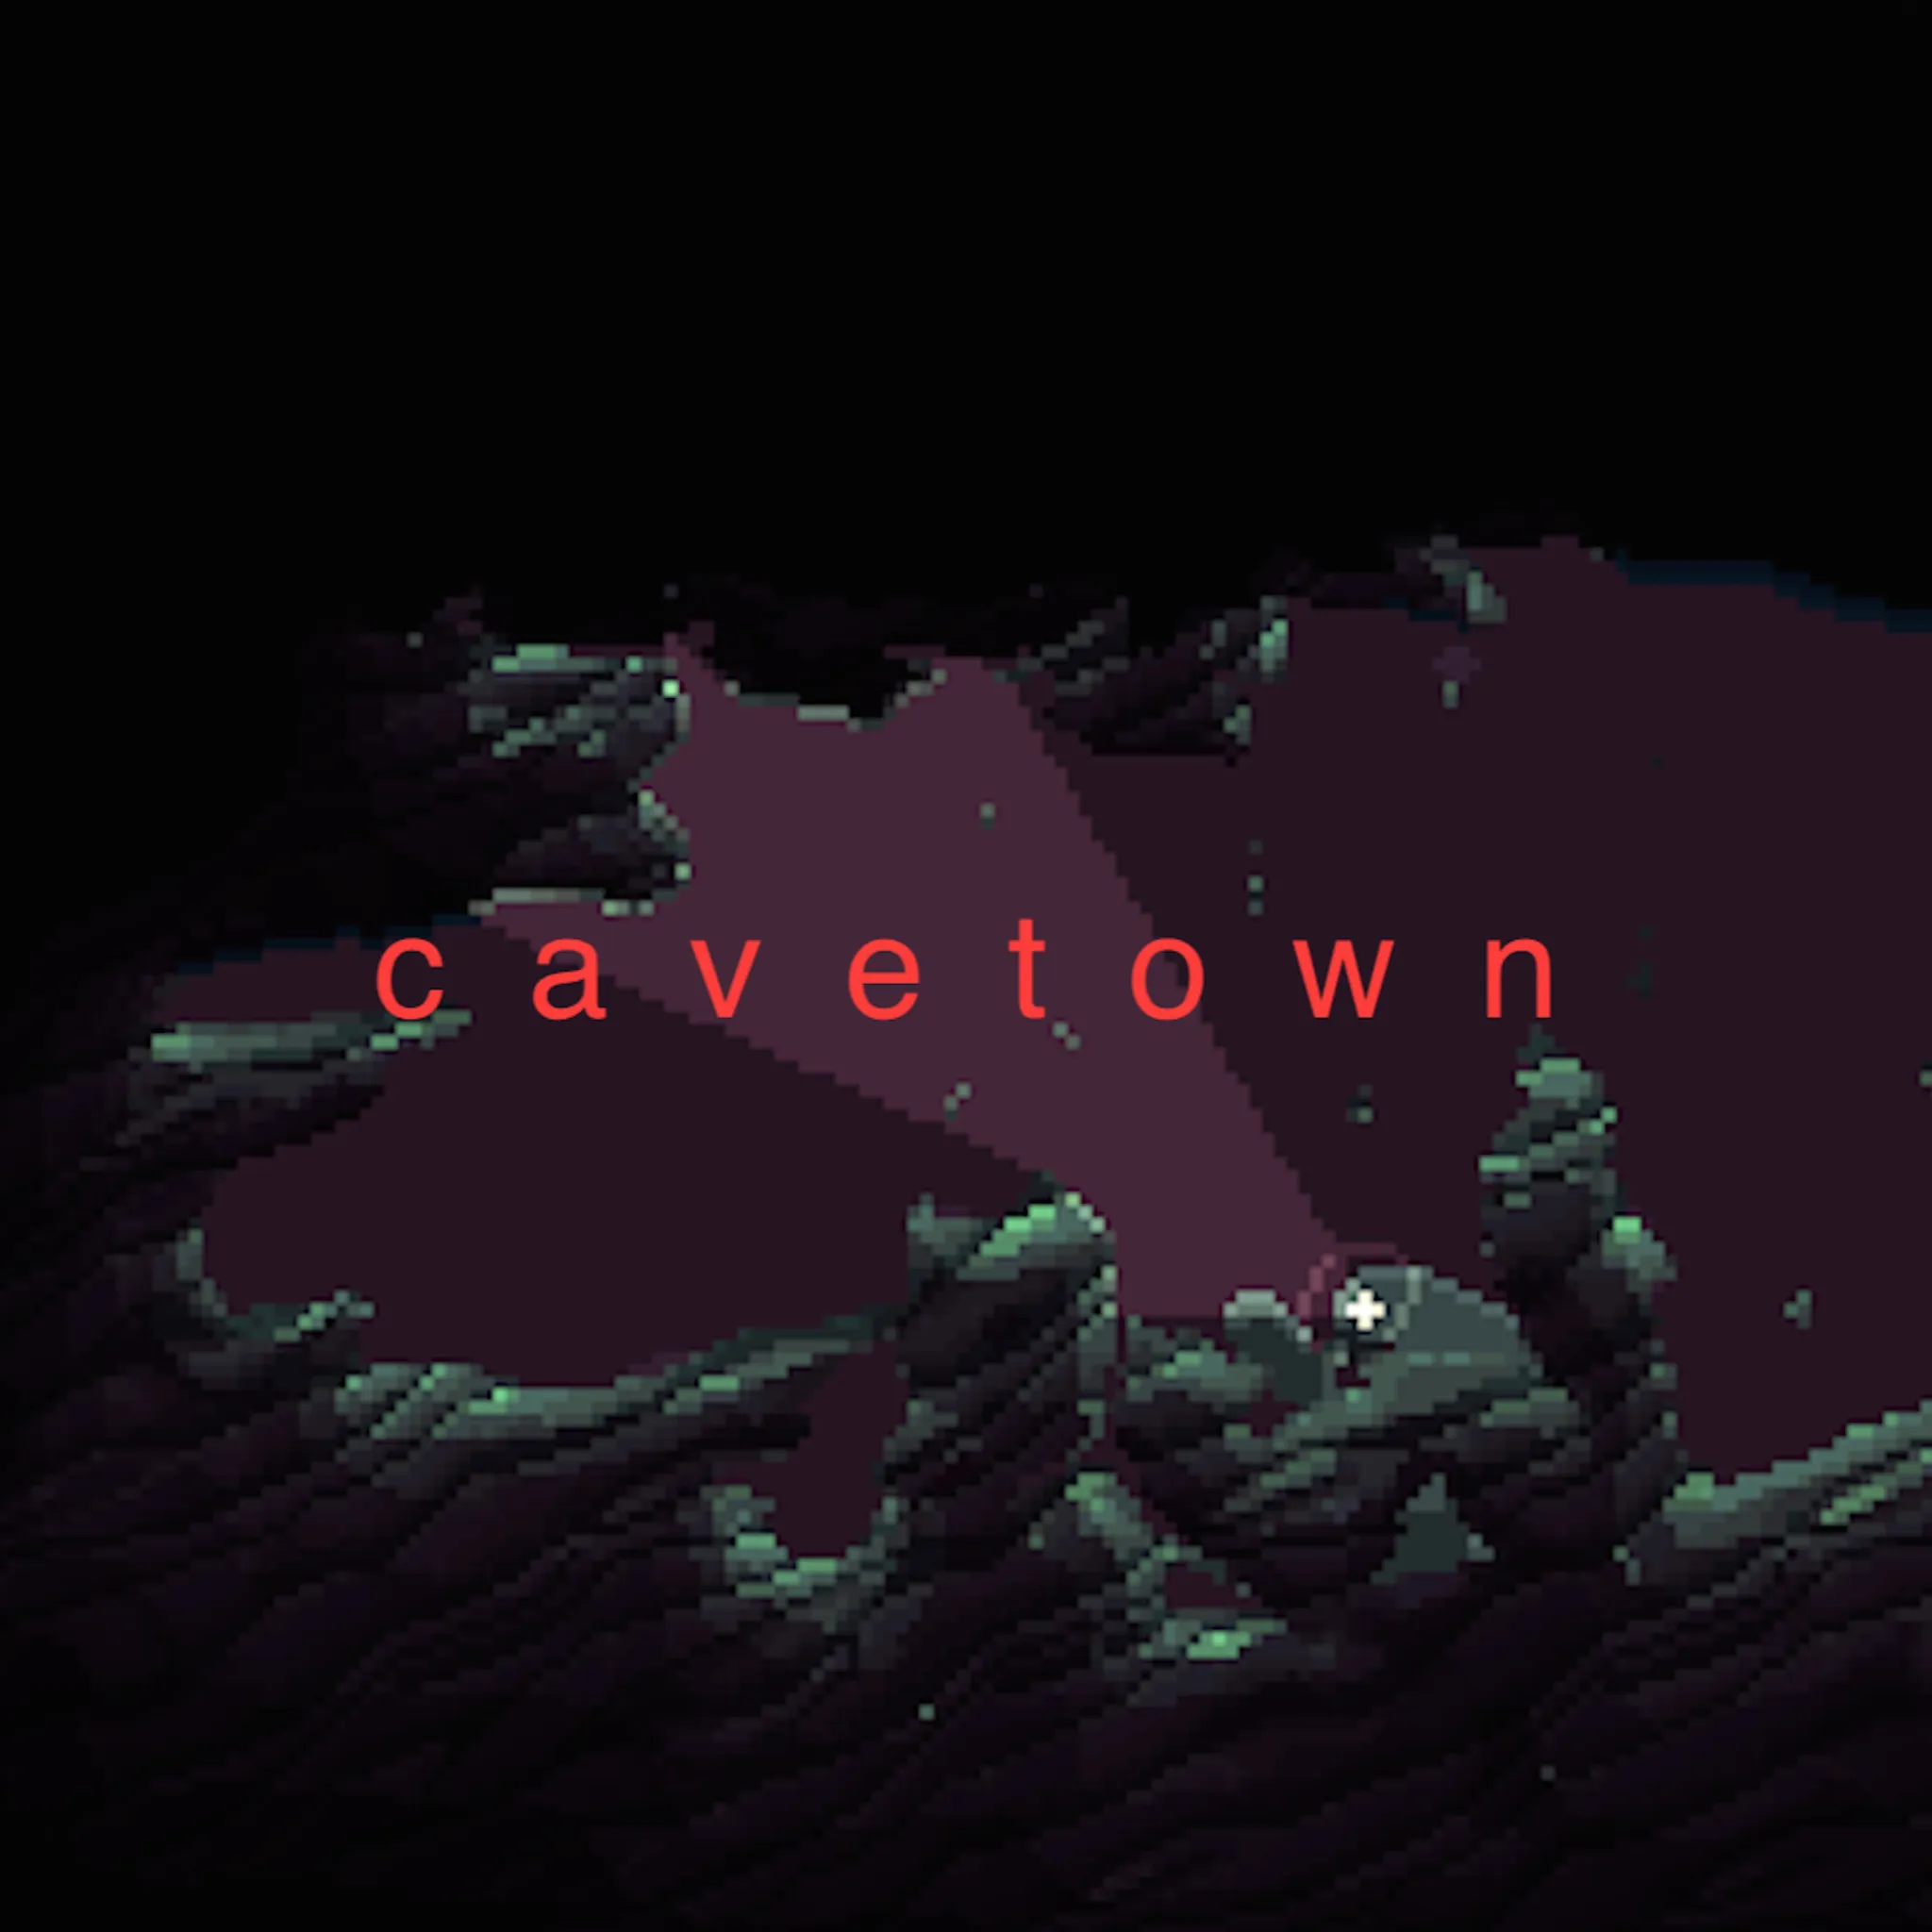 Cavetown - Cavetown artwork